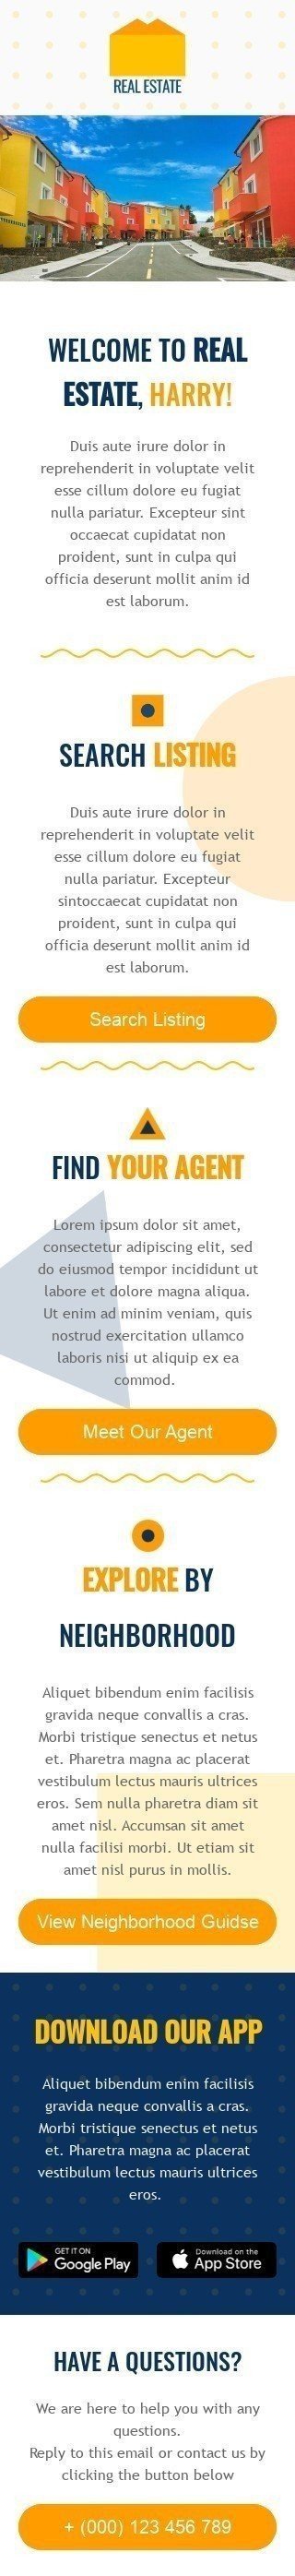 Modello Email Benvenuto «Trova il tuo agente» per il settore industriale di Immobiliari Visualizzazione mobile